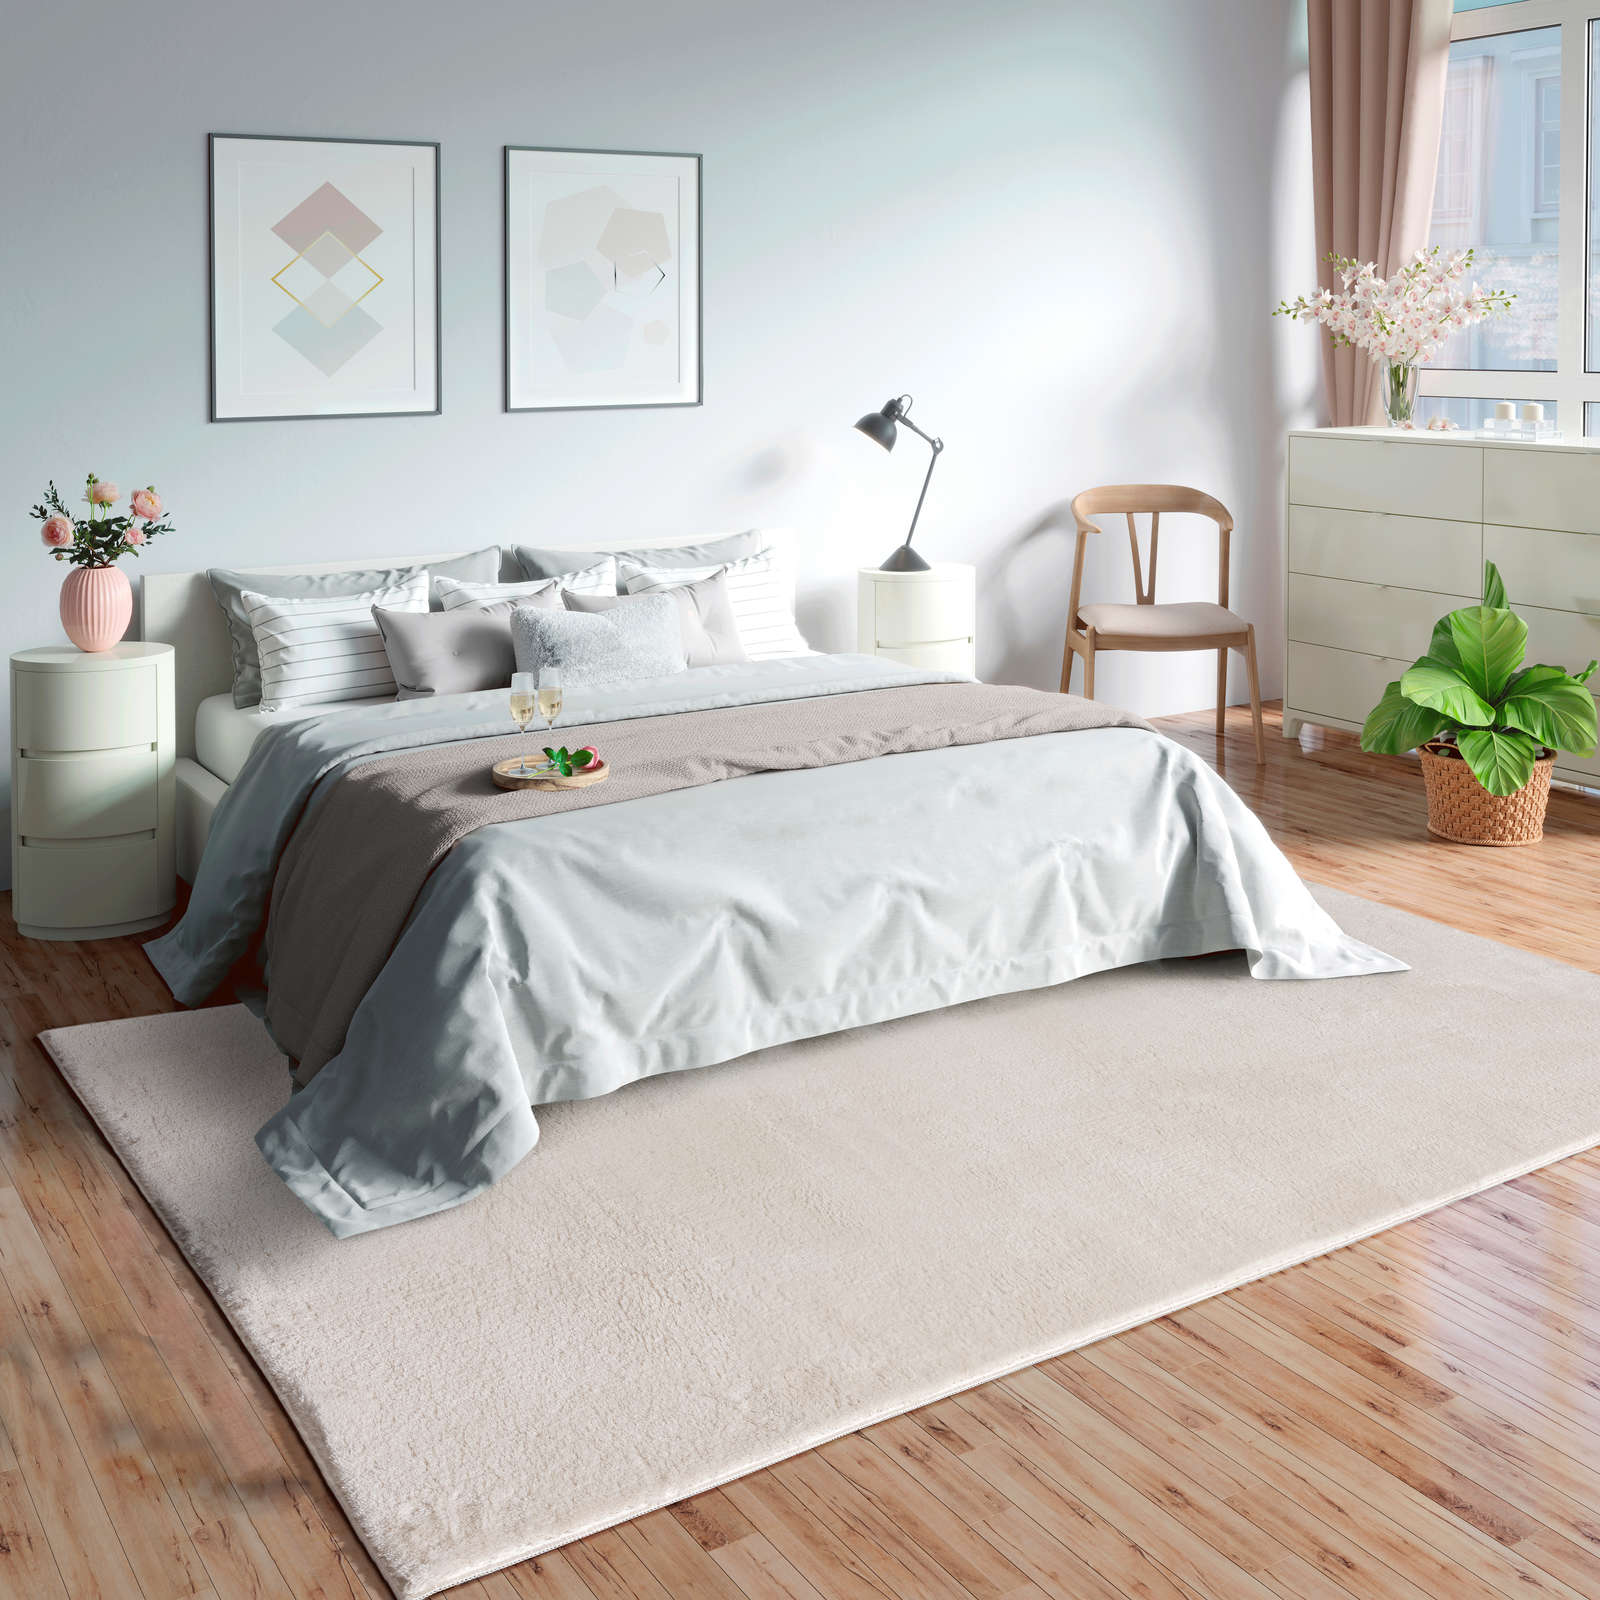             Fashionable high pile carpet in cream - 290 x 200 cm
        